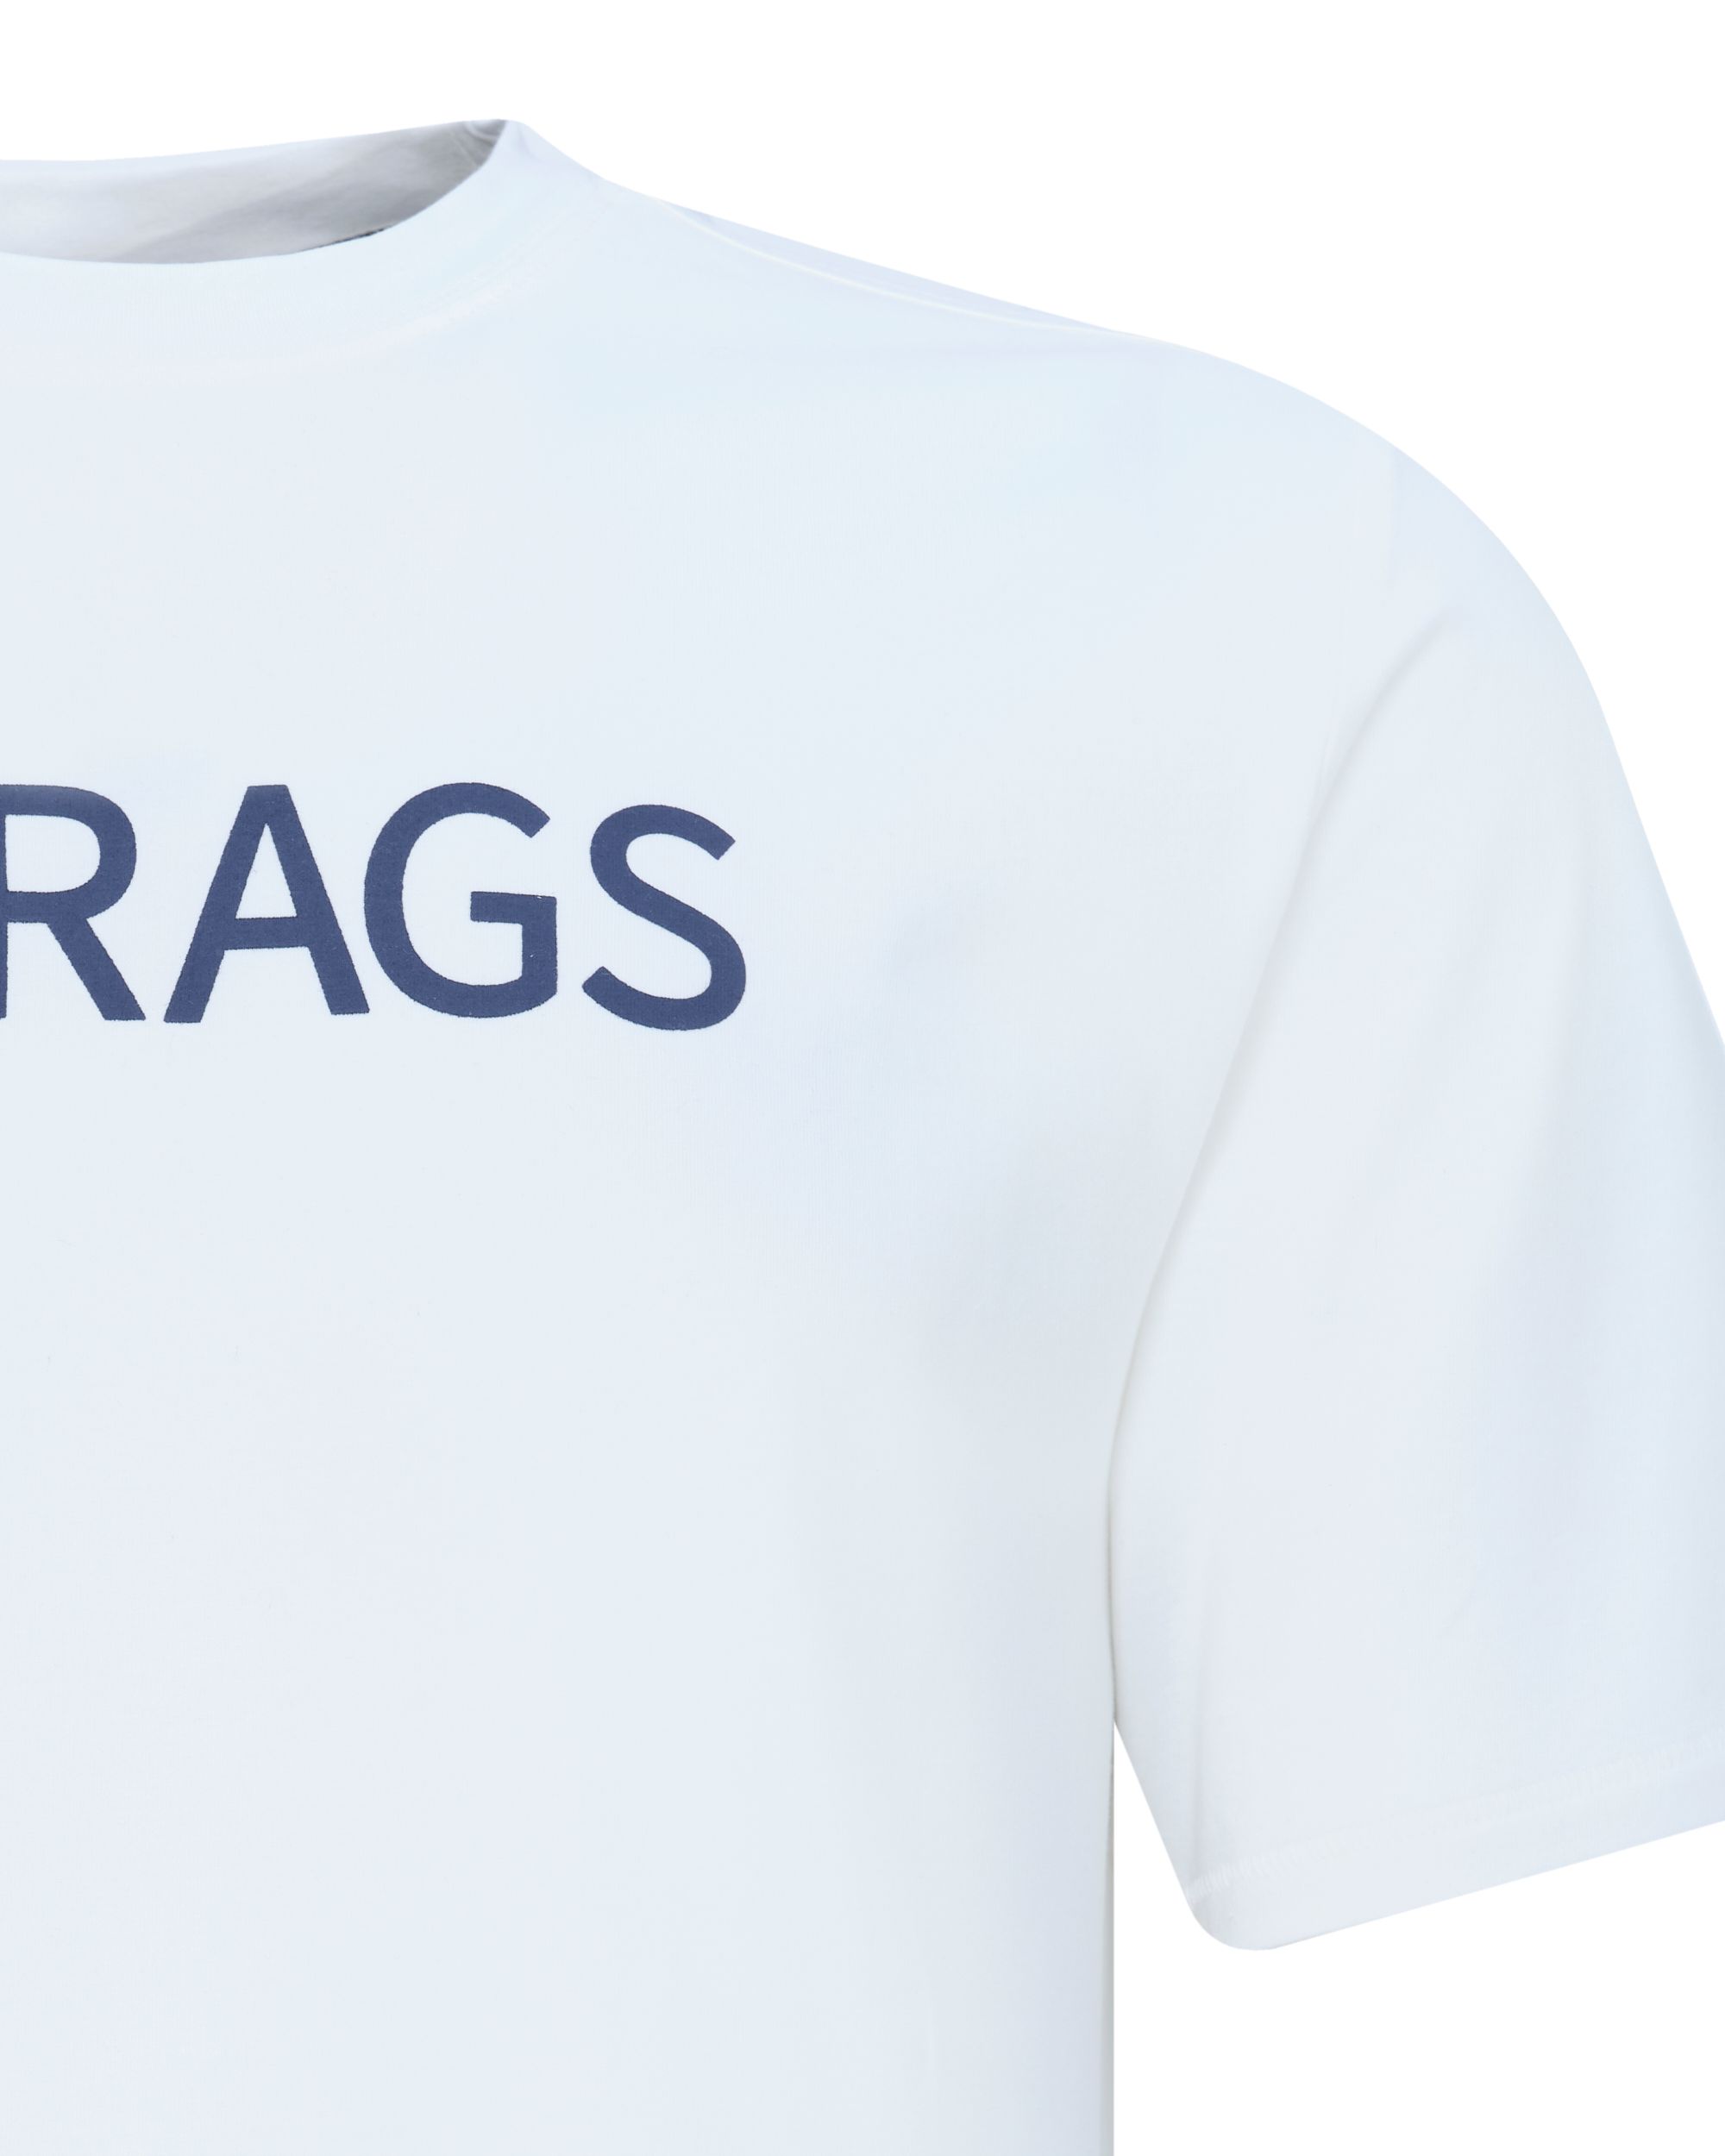 J.C. RAGS T-shirt KM Coconut milk 081505-001-L